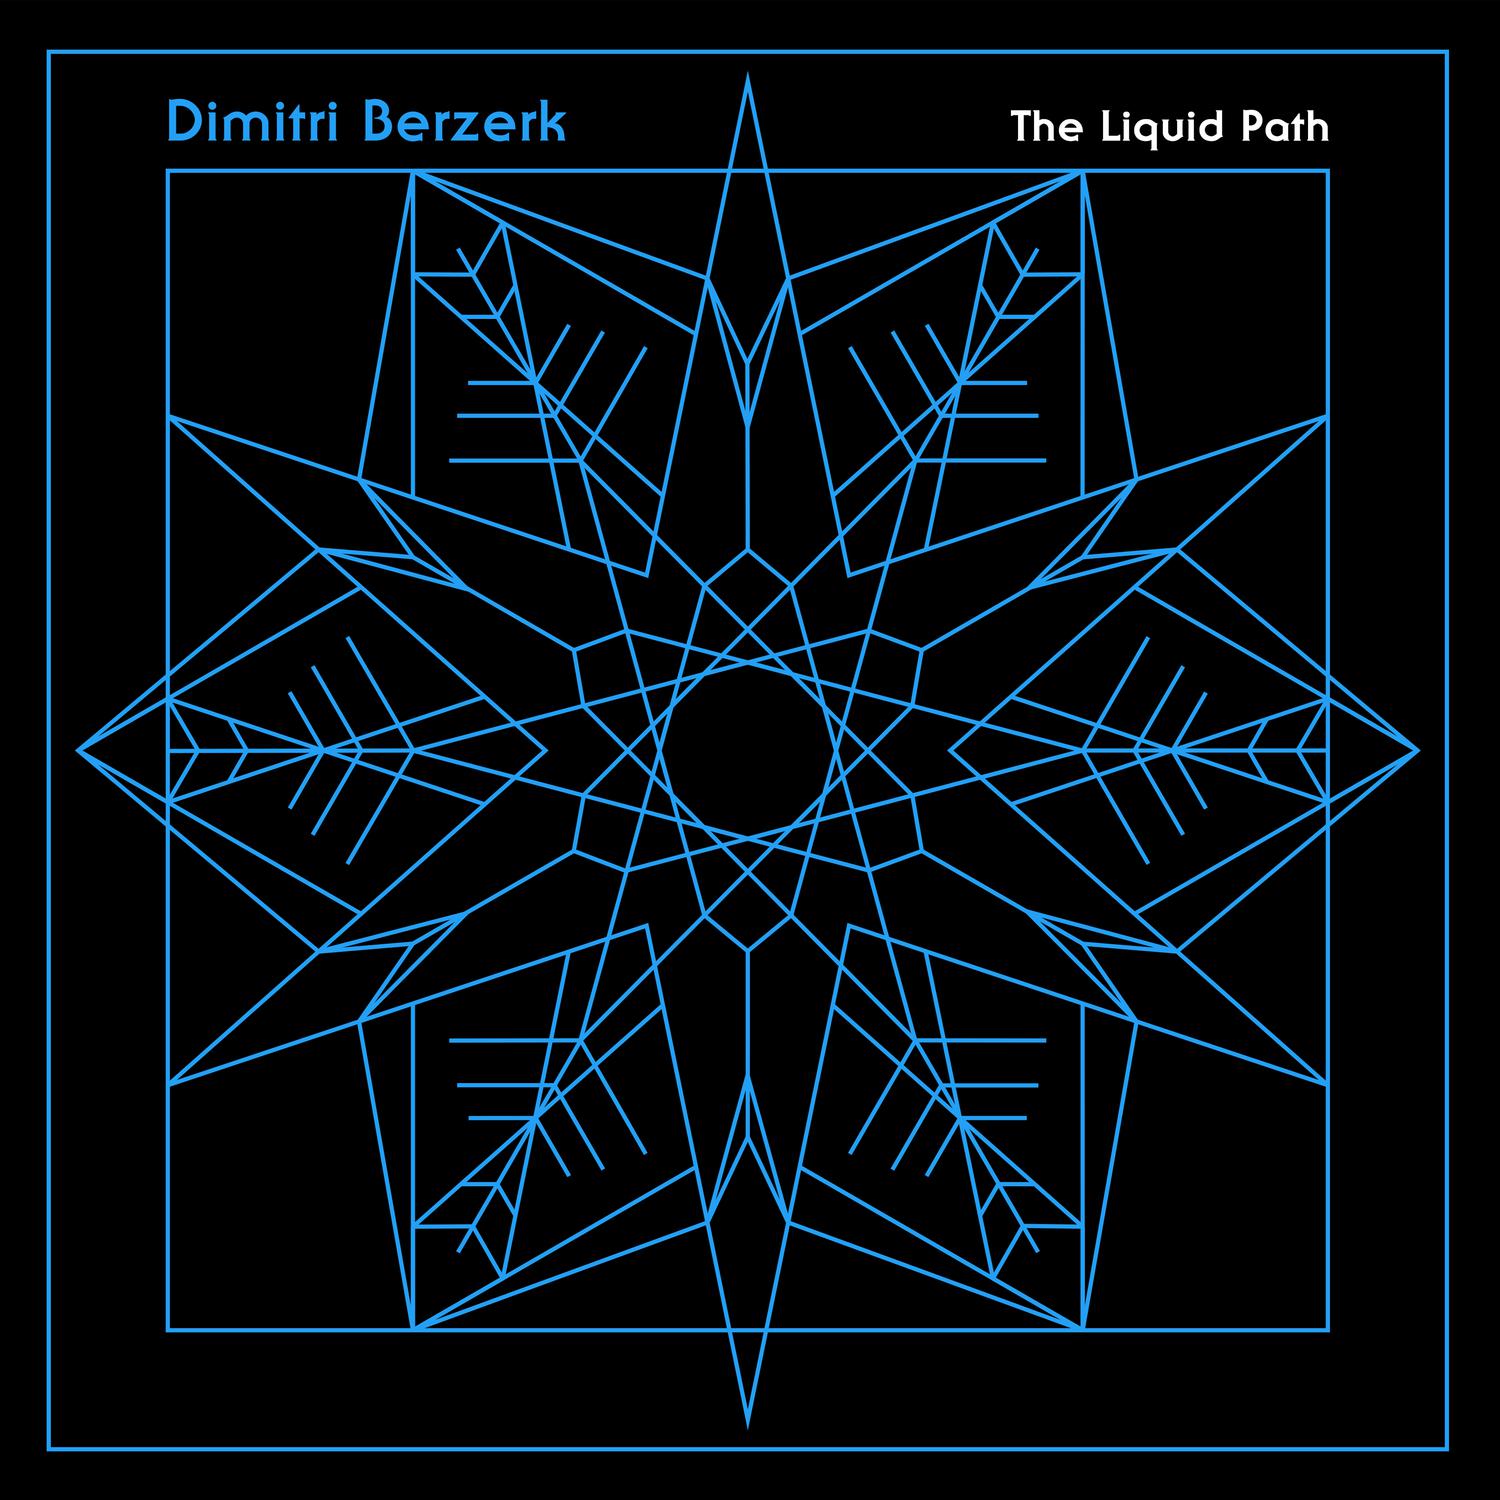 Dimitri Berzerk - Something